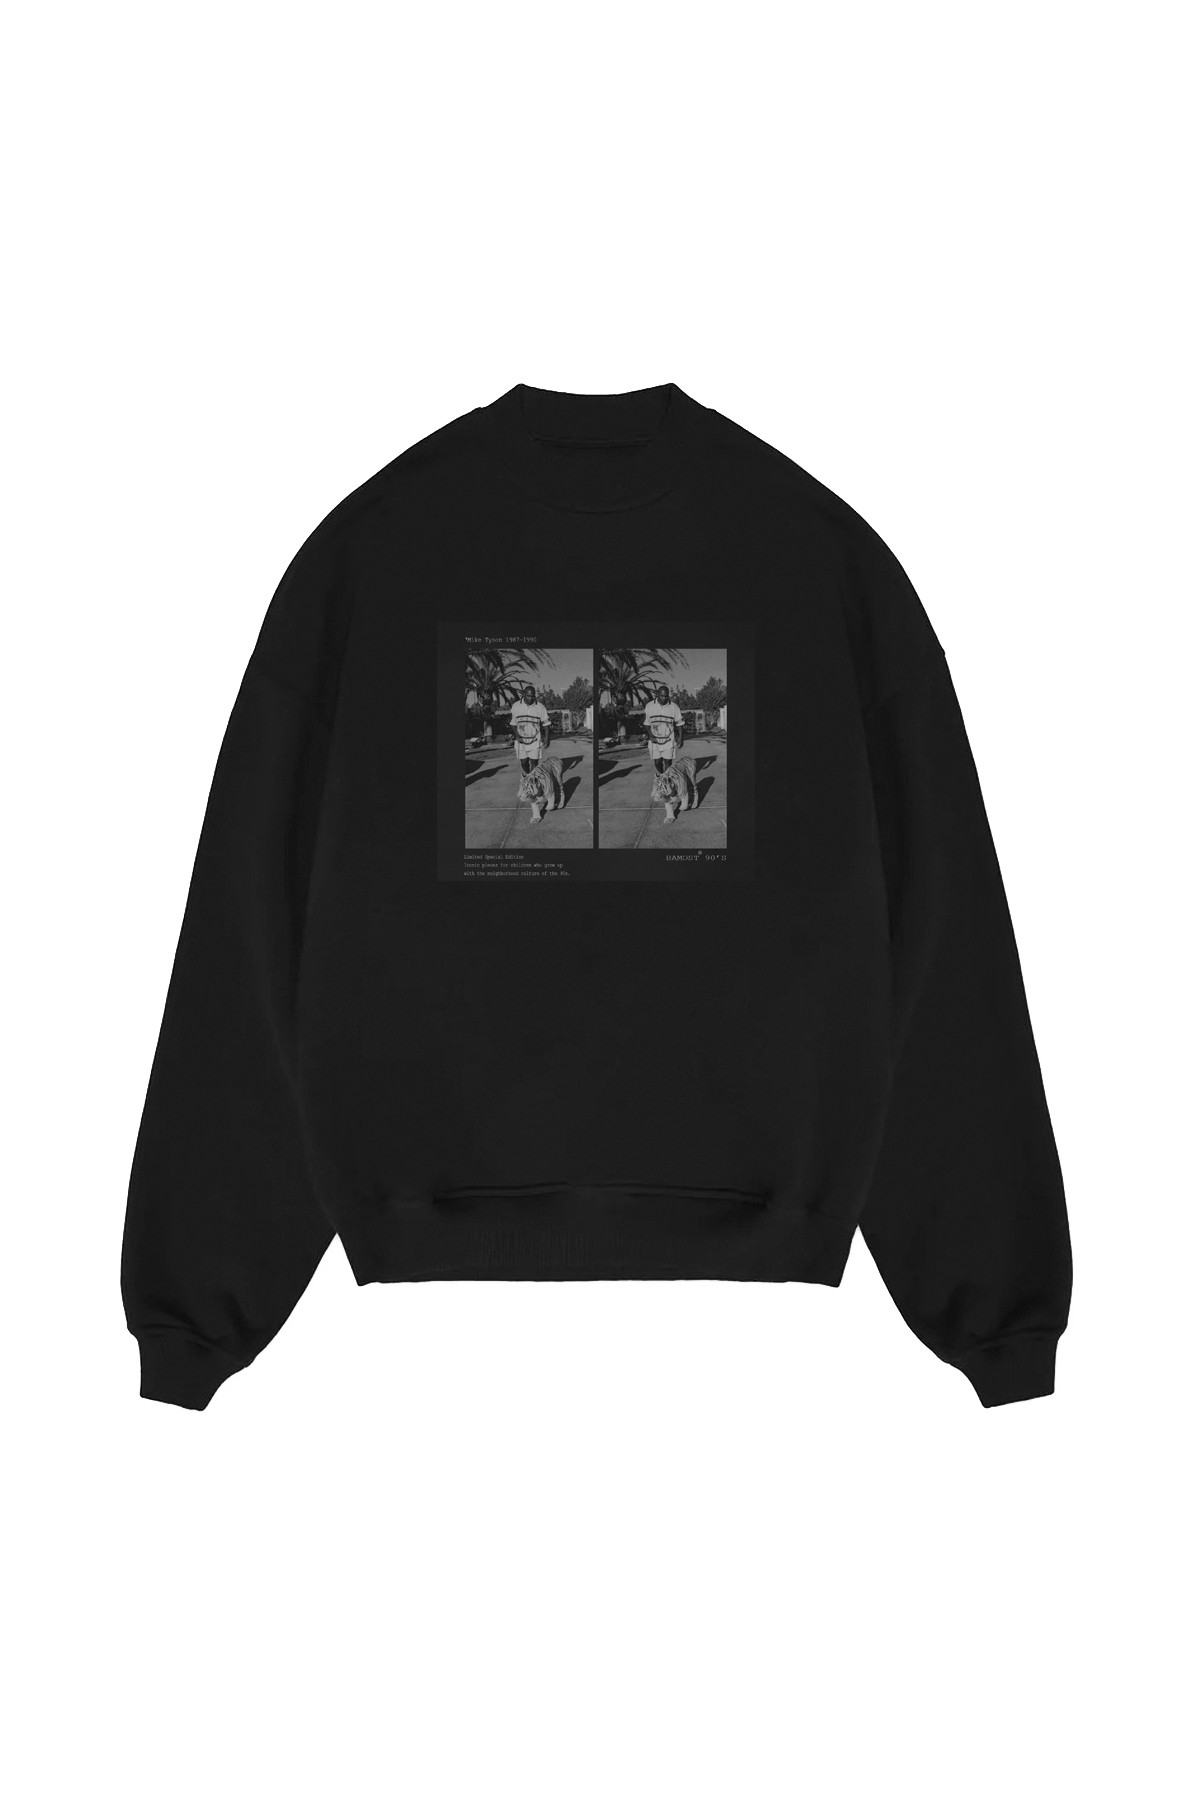 Tyson - 90's Oversize Sweatshirt - BLACK